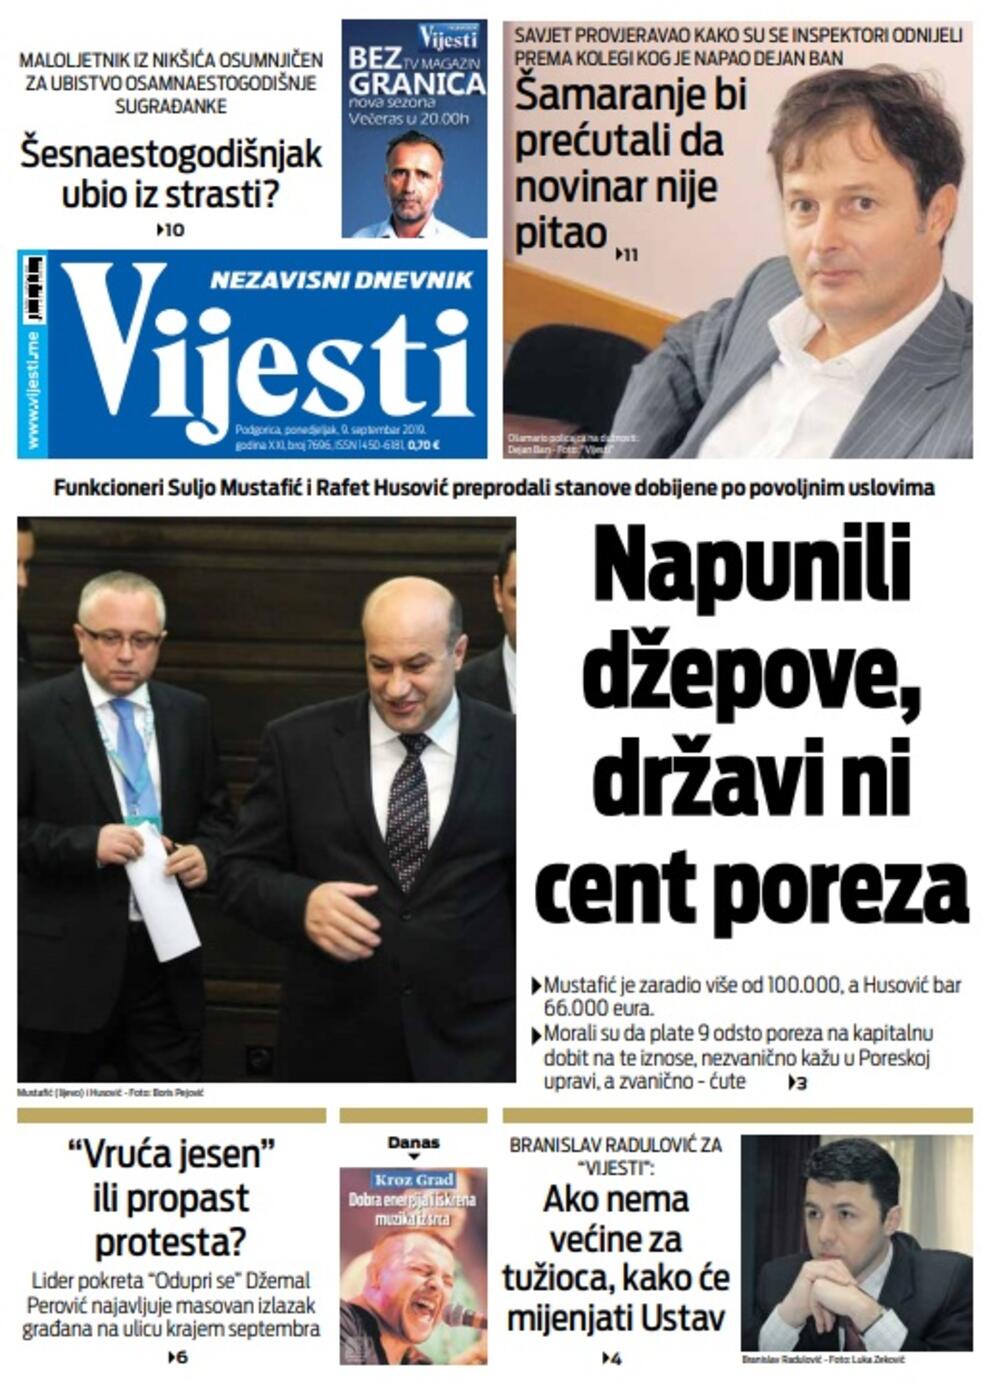 Naslovna strana "Vijesti" za 9. septembar, Foto: Vijesti